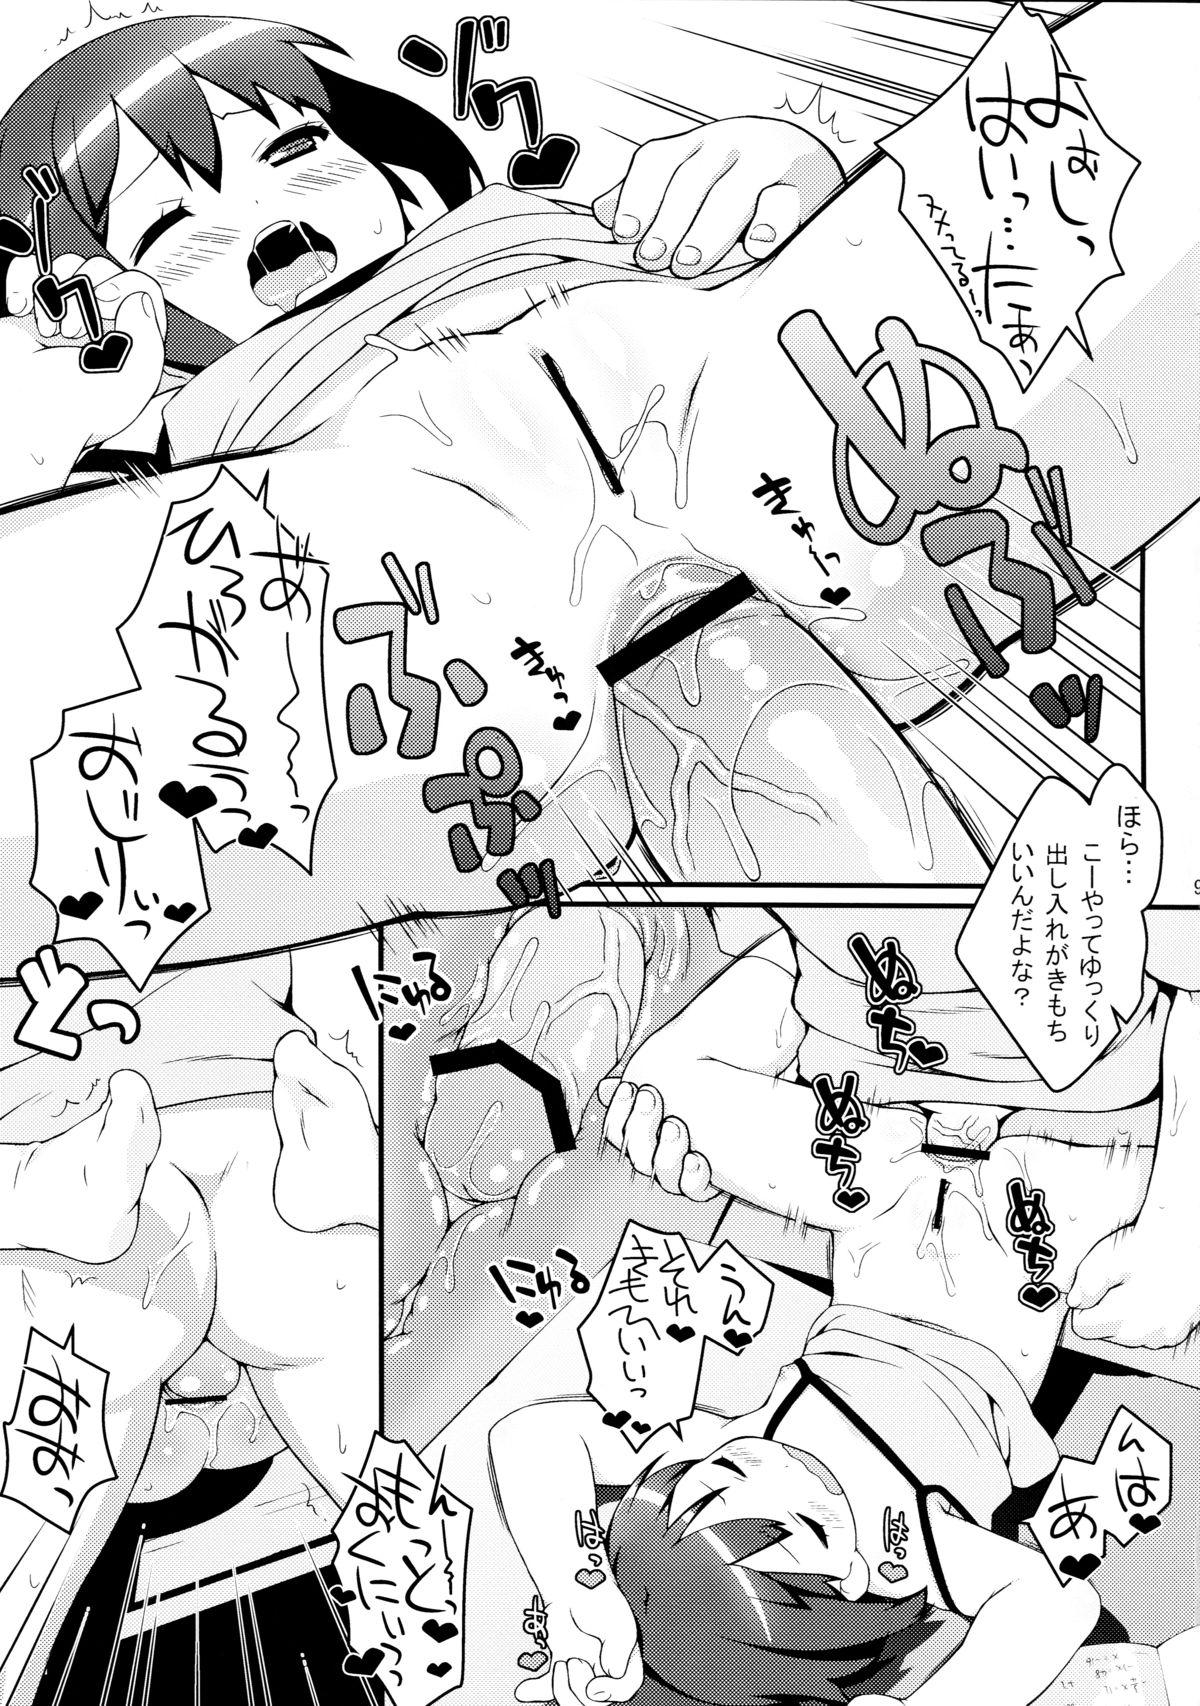 Pussy Imouto ni mo Koi ga Shitai - Chuunibyou demo koi ga shitai Village - Page 9